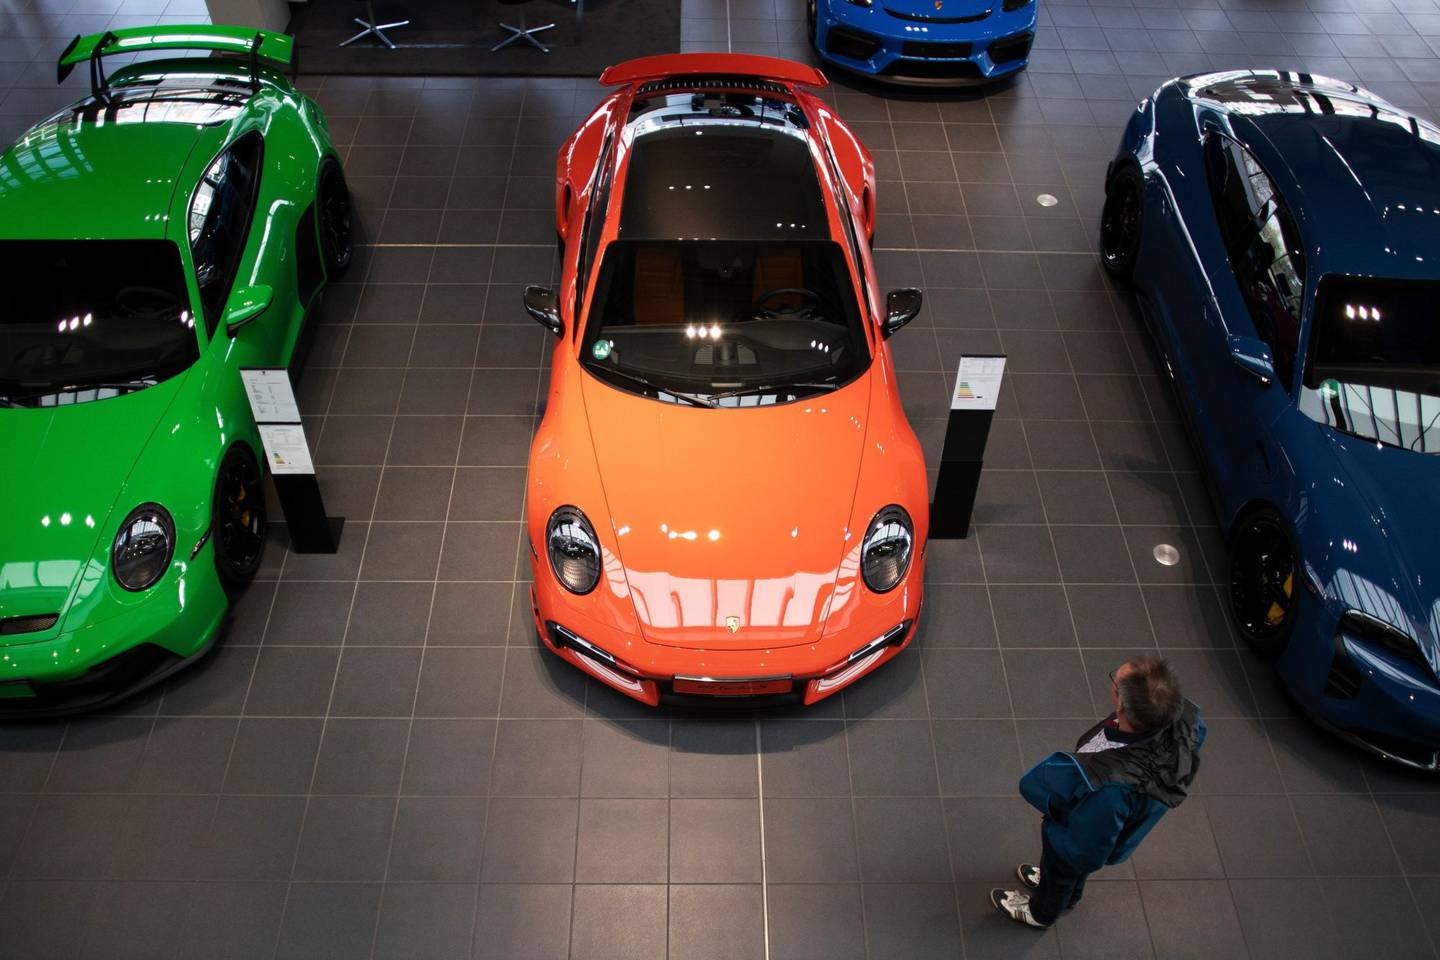 El precio de lista final fue aprobado en una reunión del consejo de supervisión de VW y su comité ejecutivo y está en el límite superior del rango de 76,50-82,50 euros que se ofreció en un principio a los inversionistas. Porsche marcará su primer día de negociación cuando los mercados abran el jueves en Fráncfort.